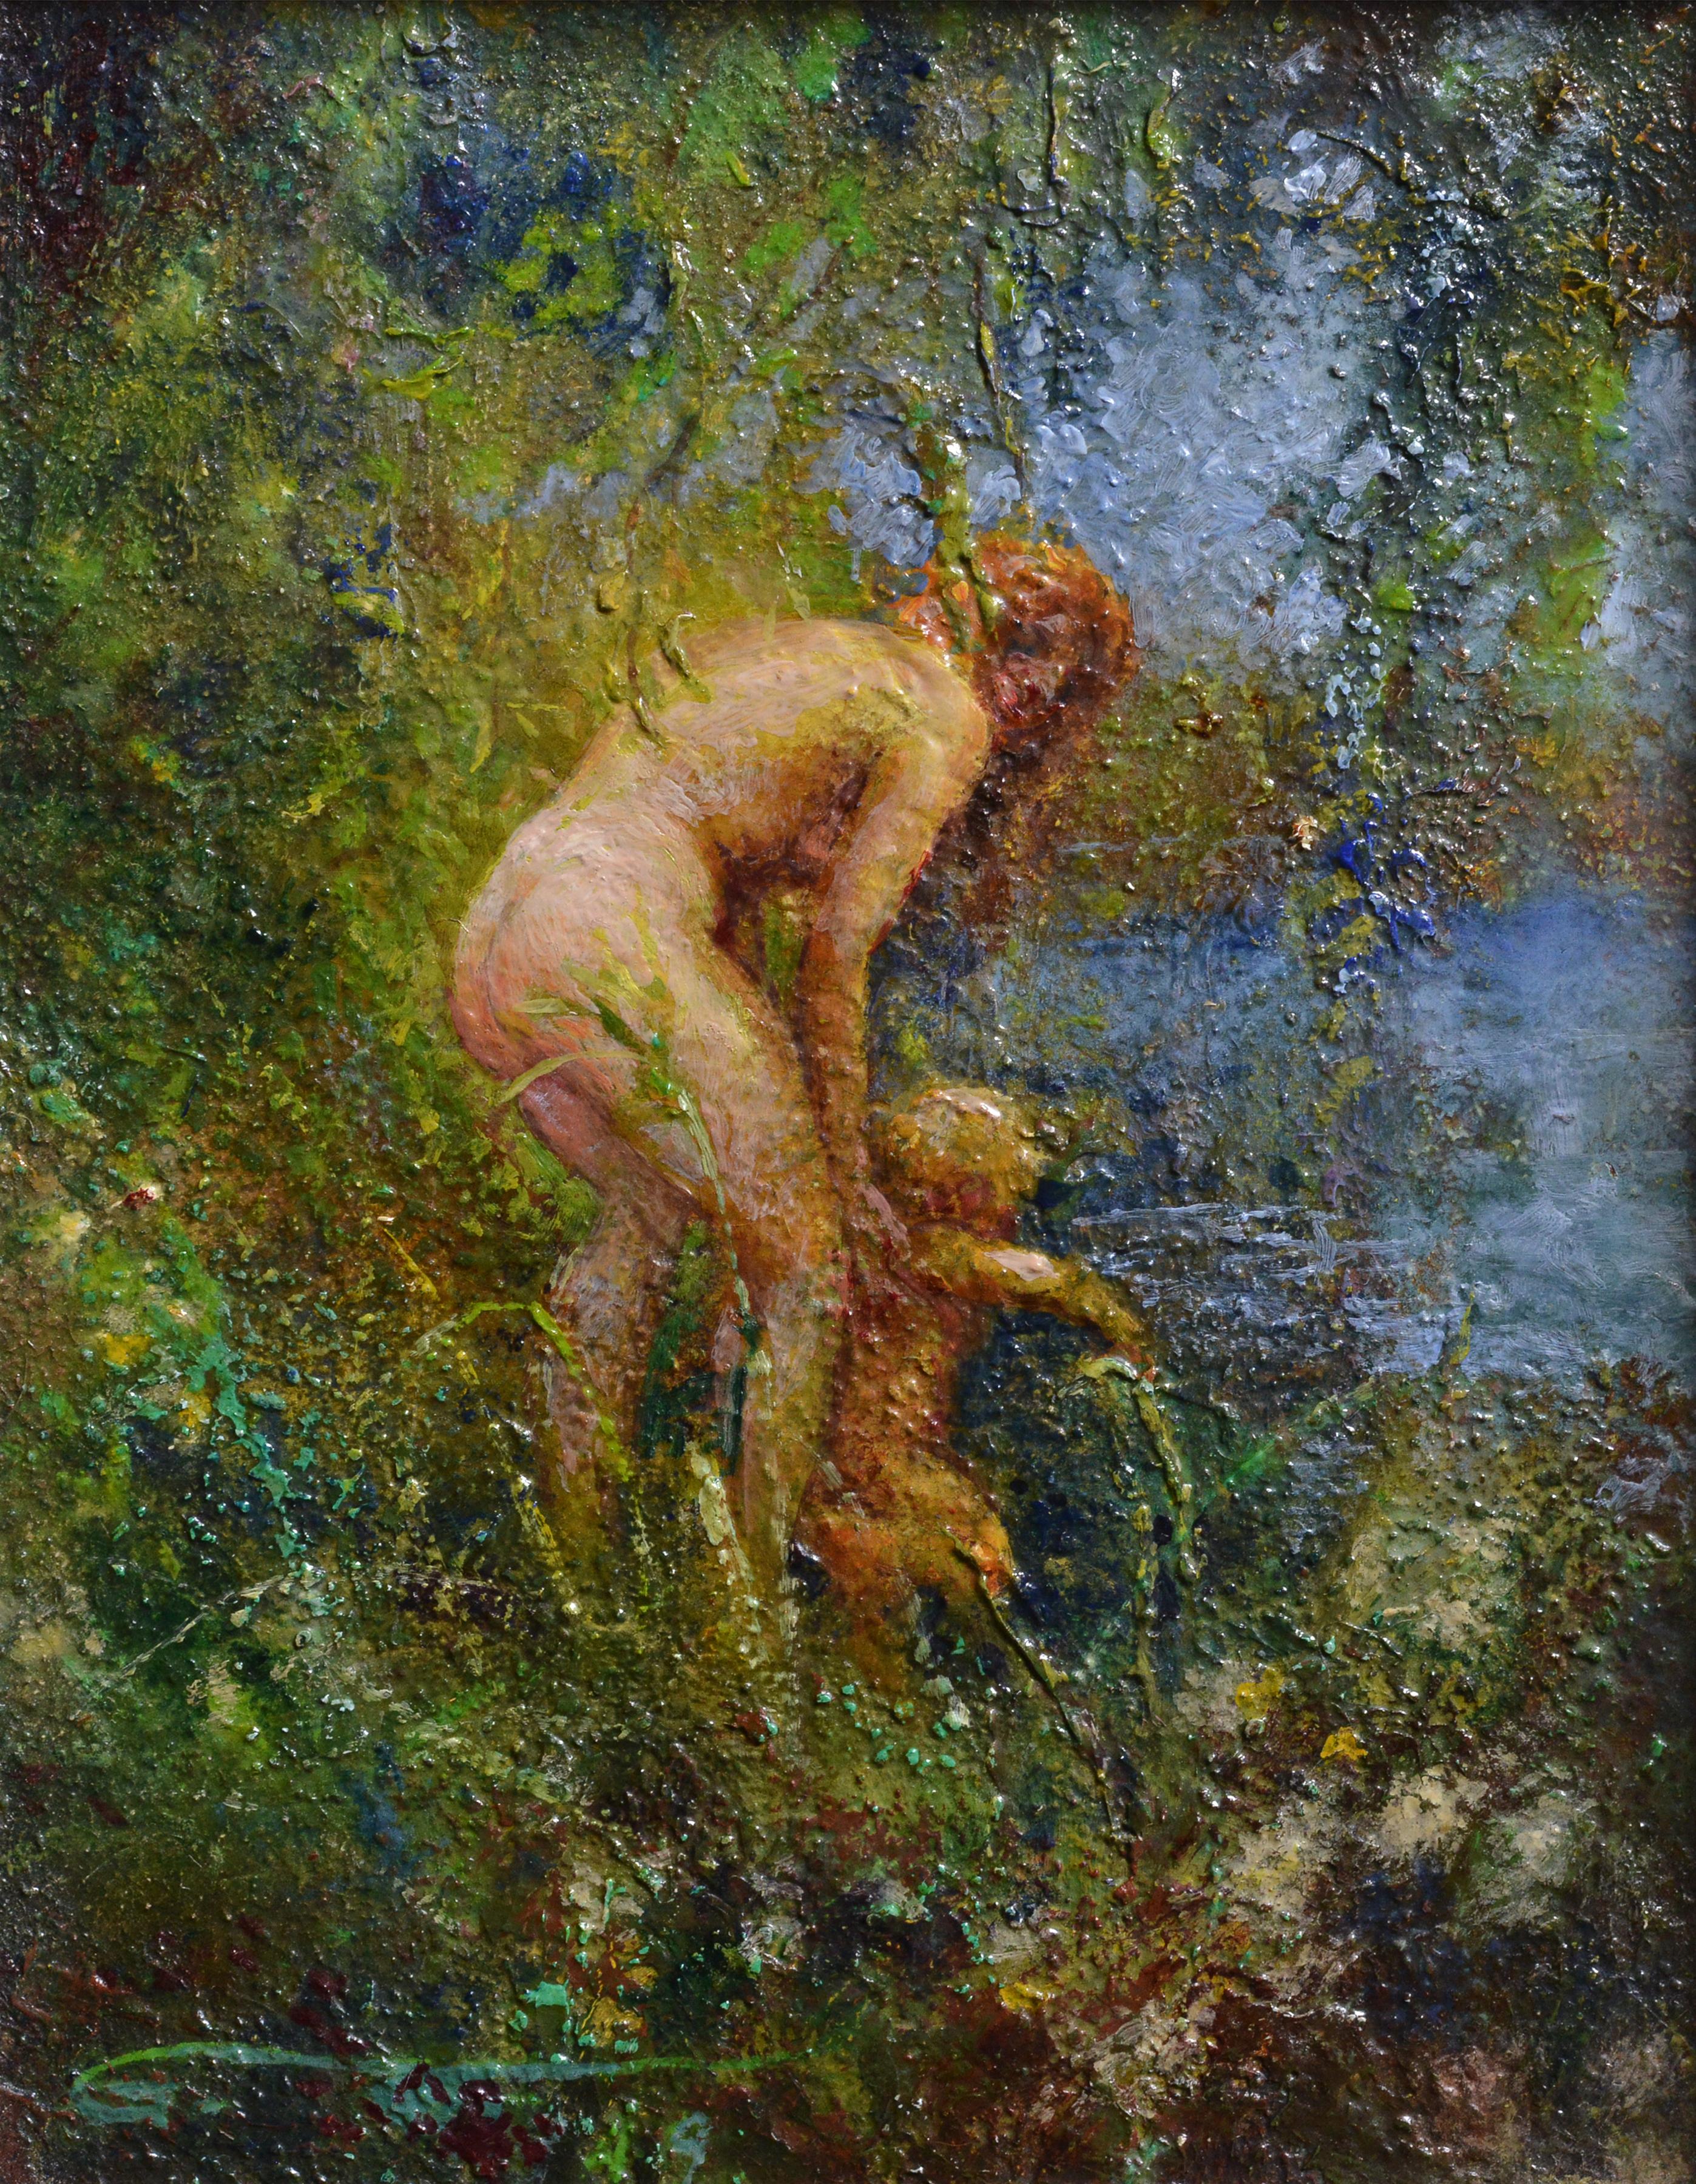 Frau im Fluss badet Kind, ca. 1932, Ölgemälde des schwedischen Meisters Widholm – Painting von Ernst Gunnar Widholm